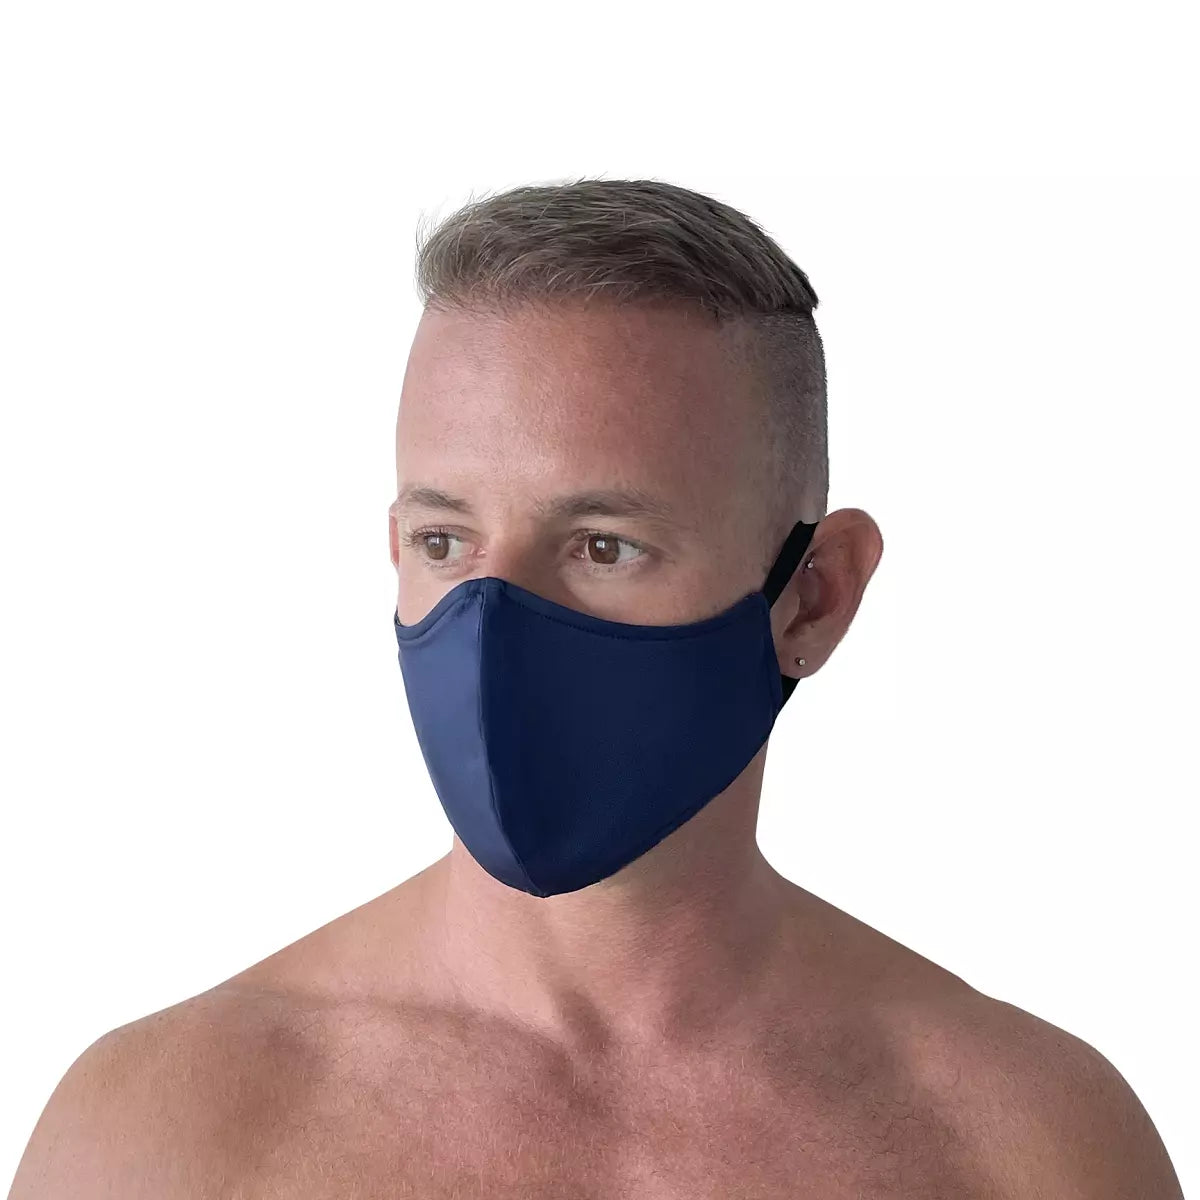 man wearing navy blue face mask